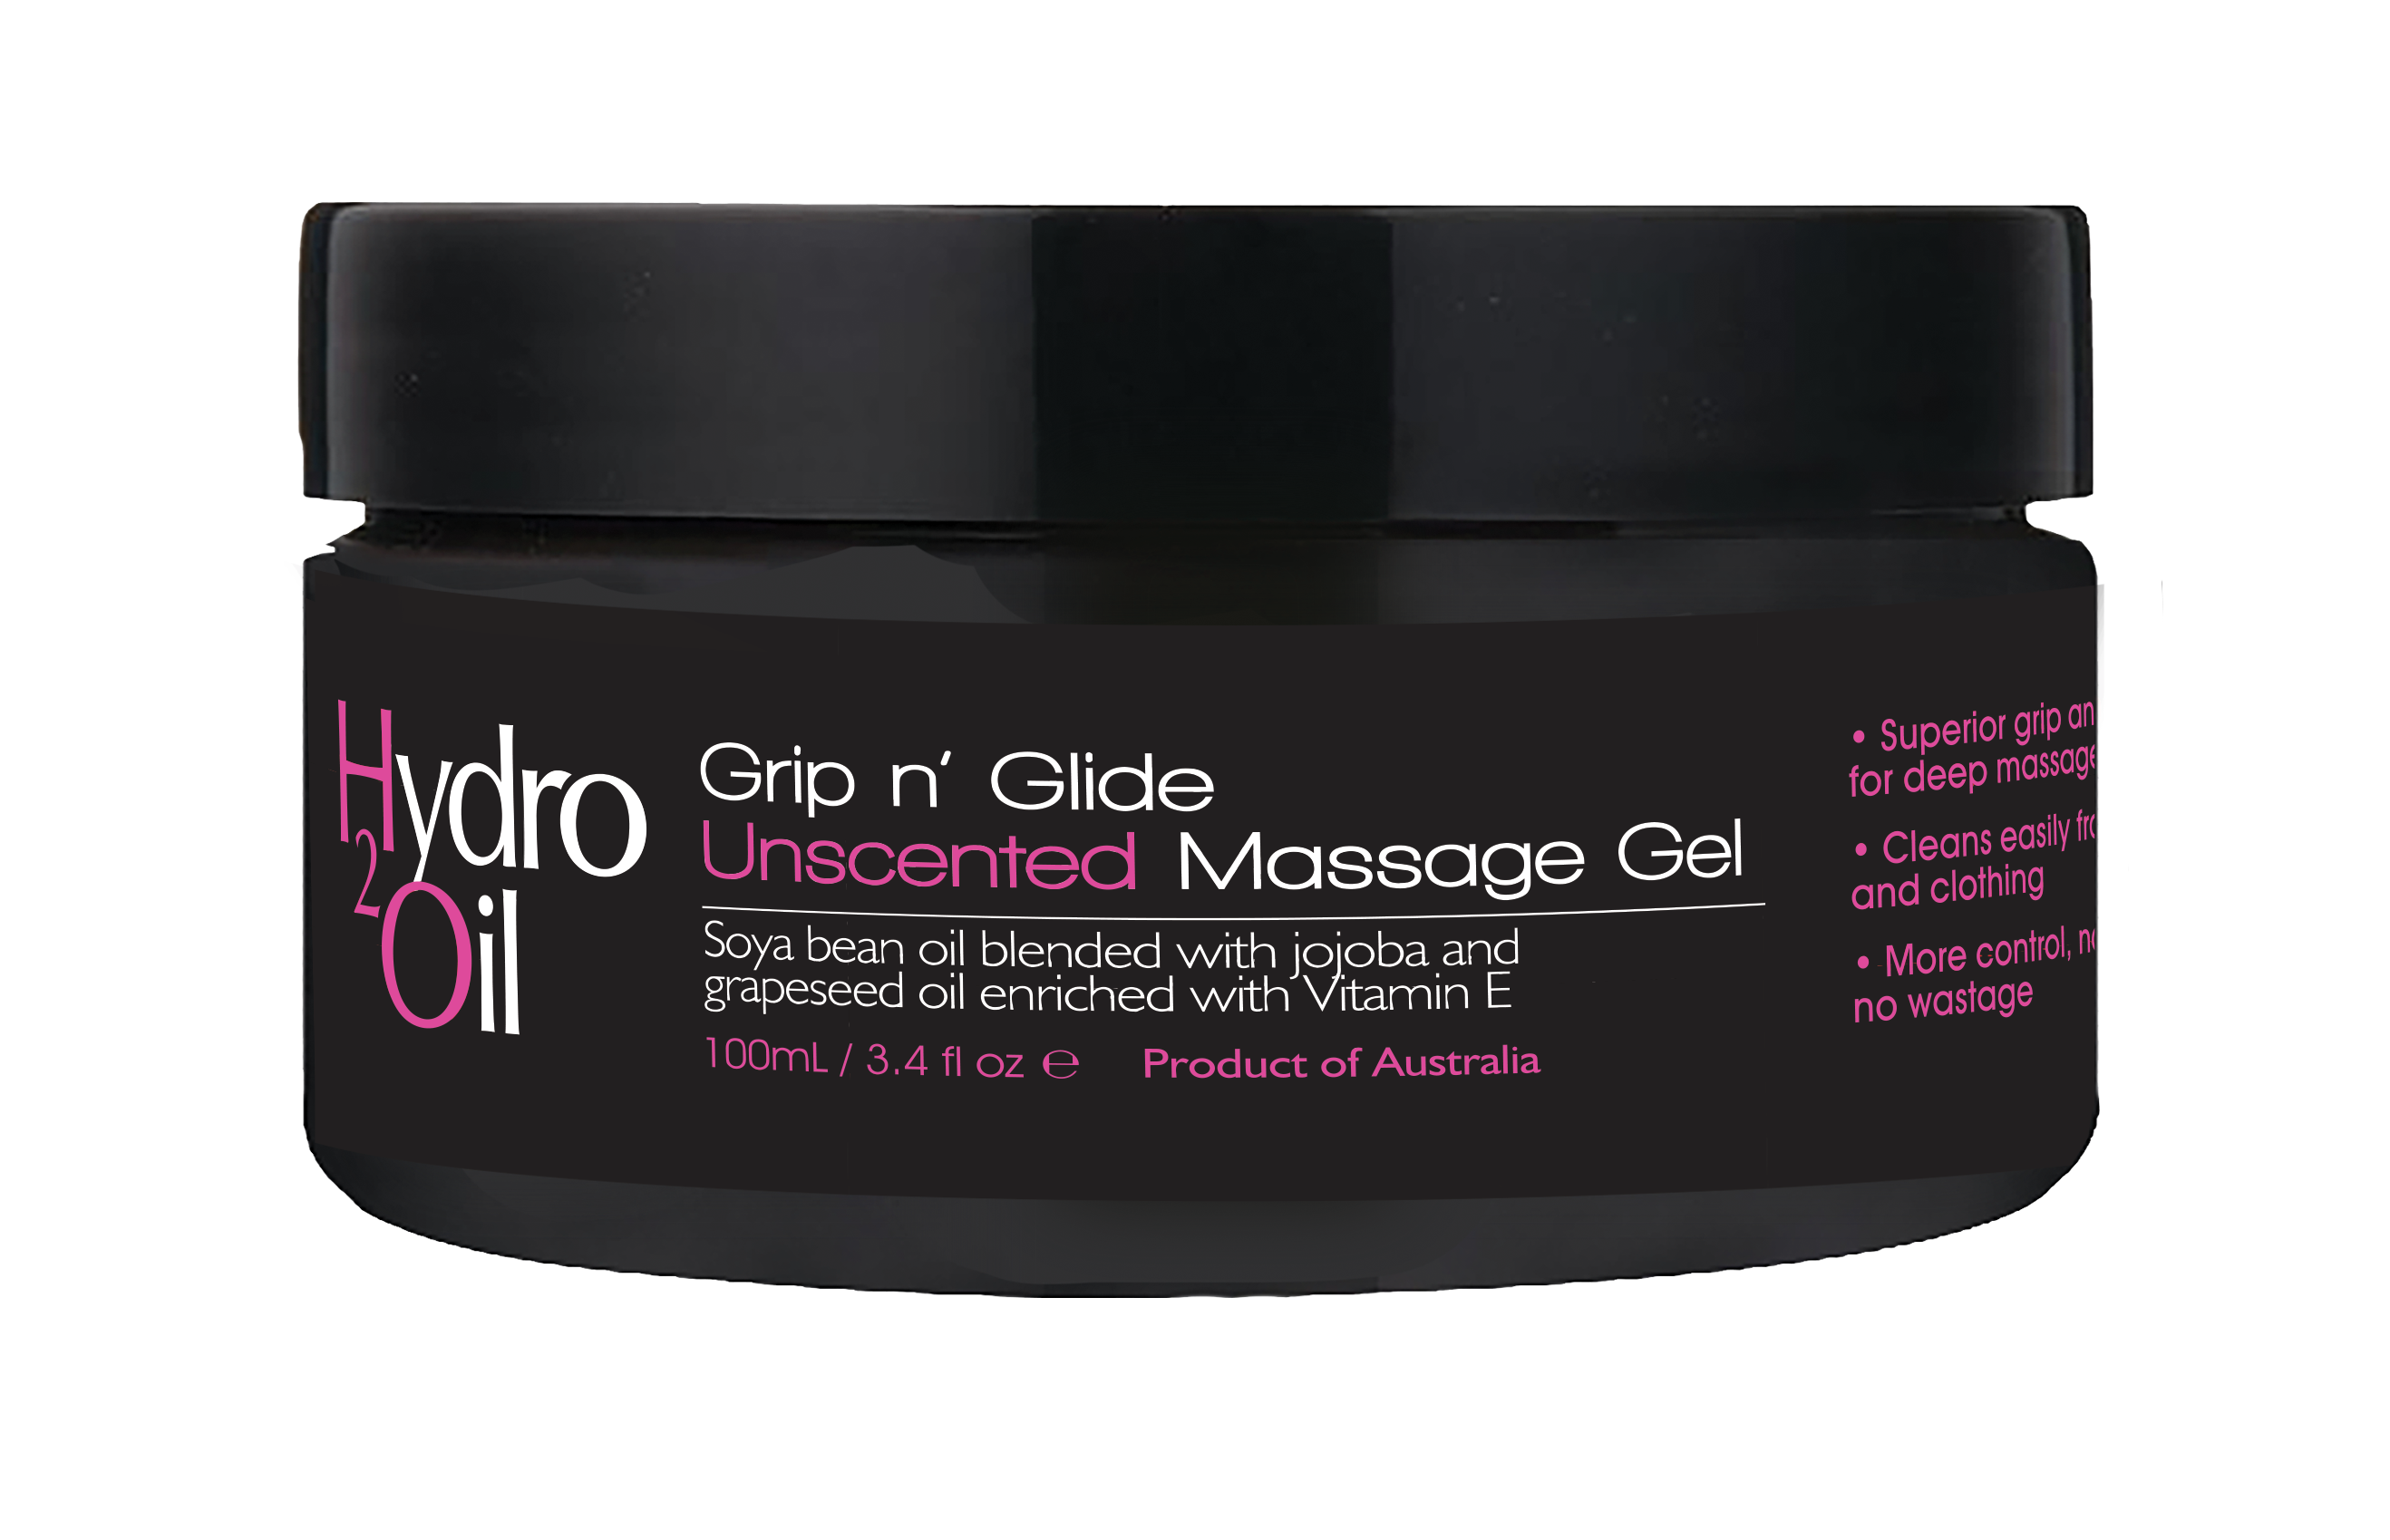 Hydro 2 Oil Grip n' Glide Massage Gel - Unscented 100ml